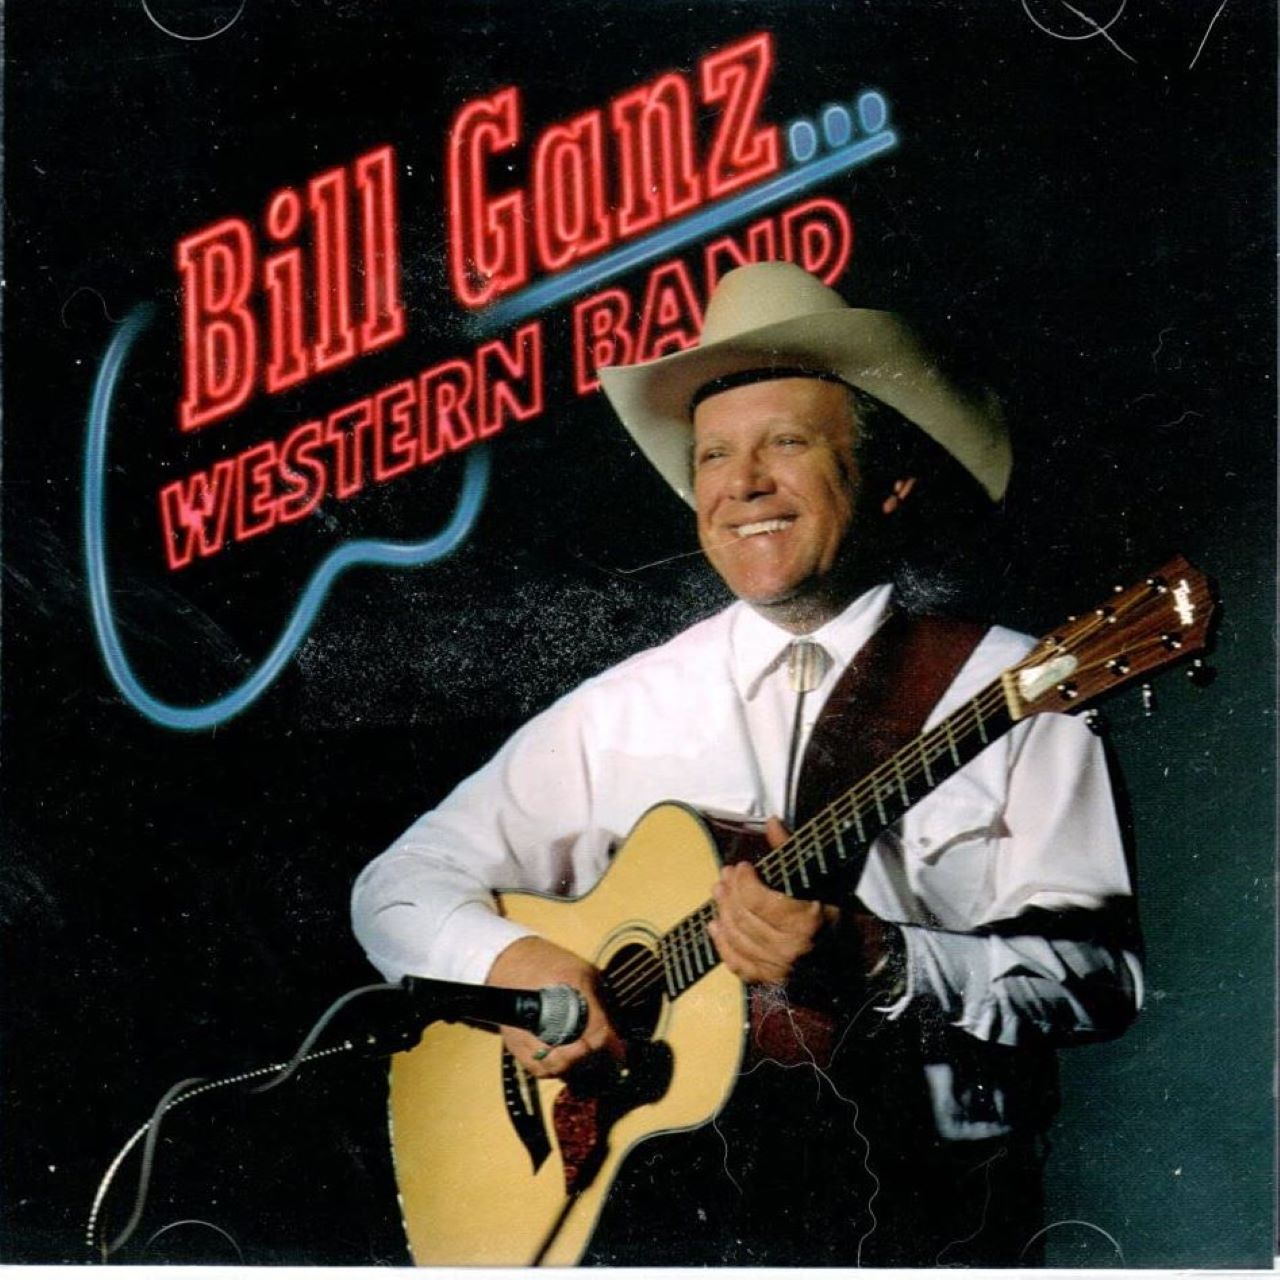 Bill Ganz Western Band - Bill Ganz Western Band cover album